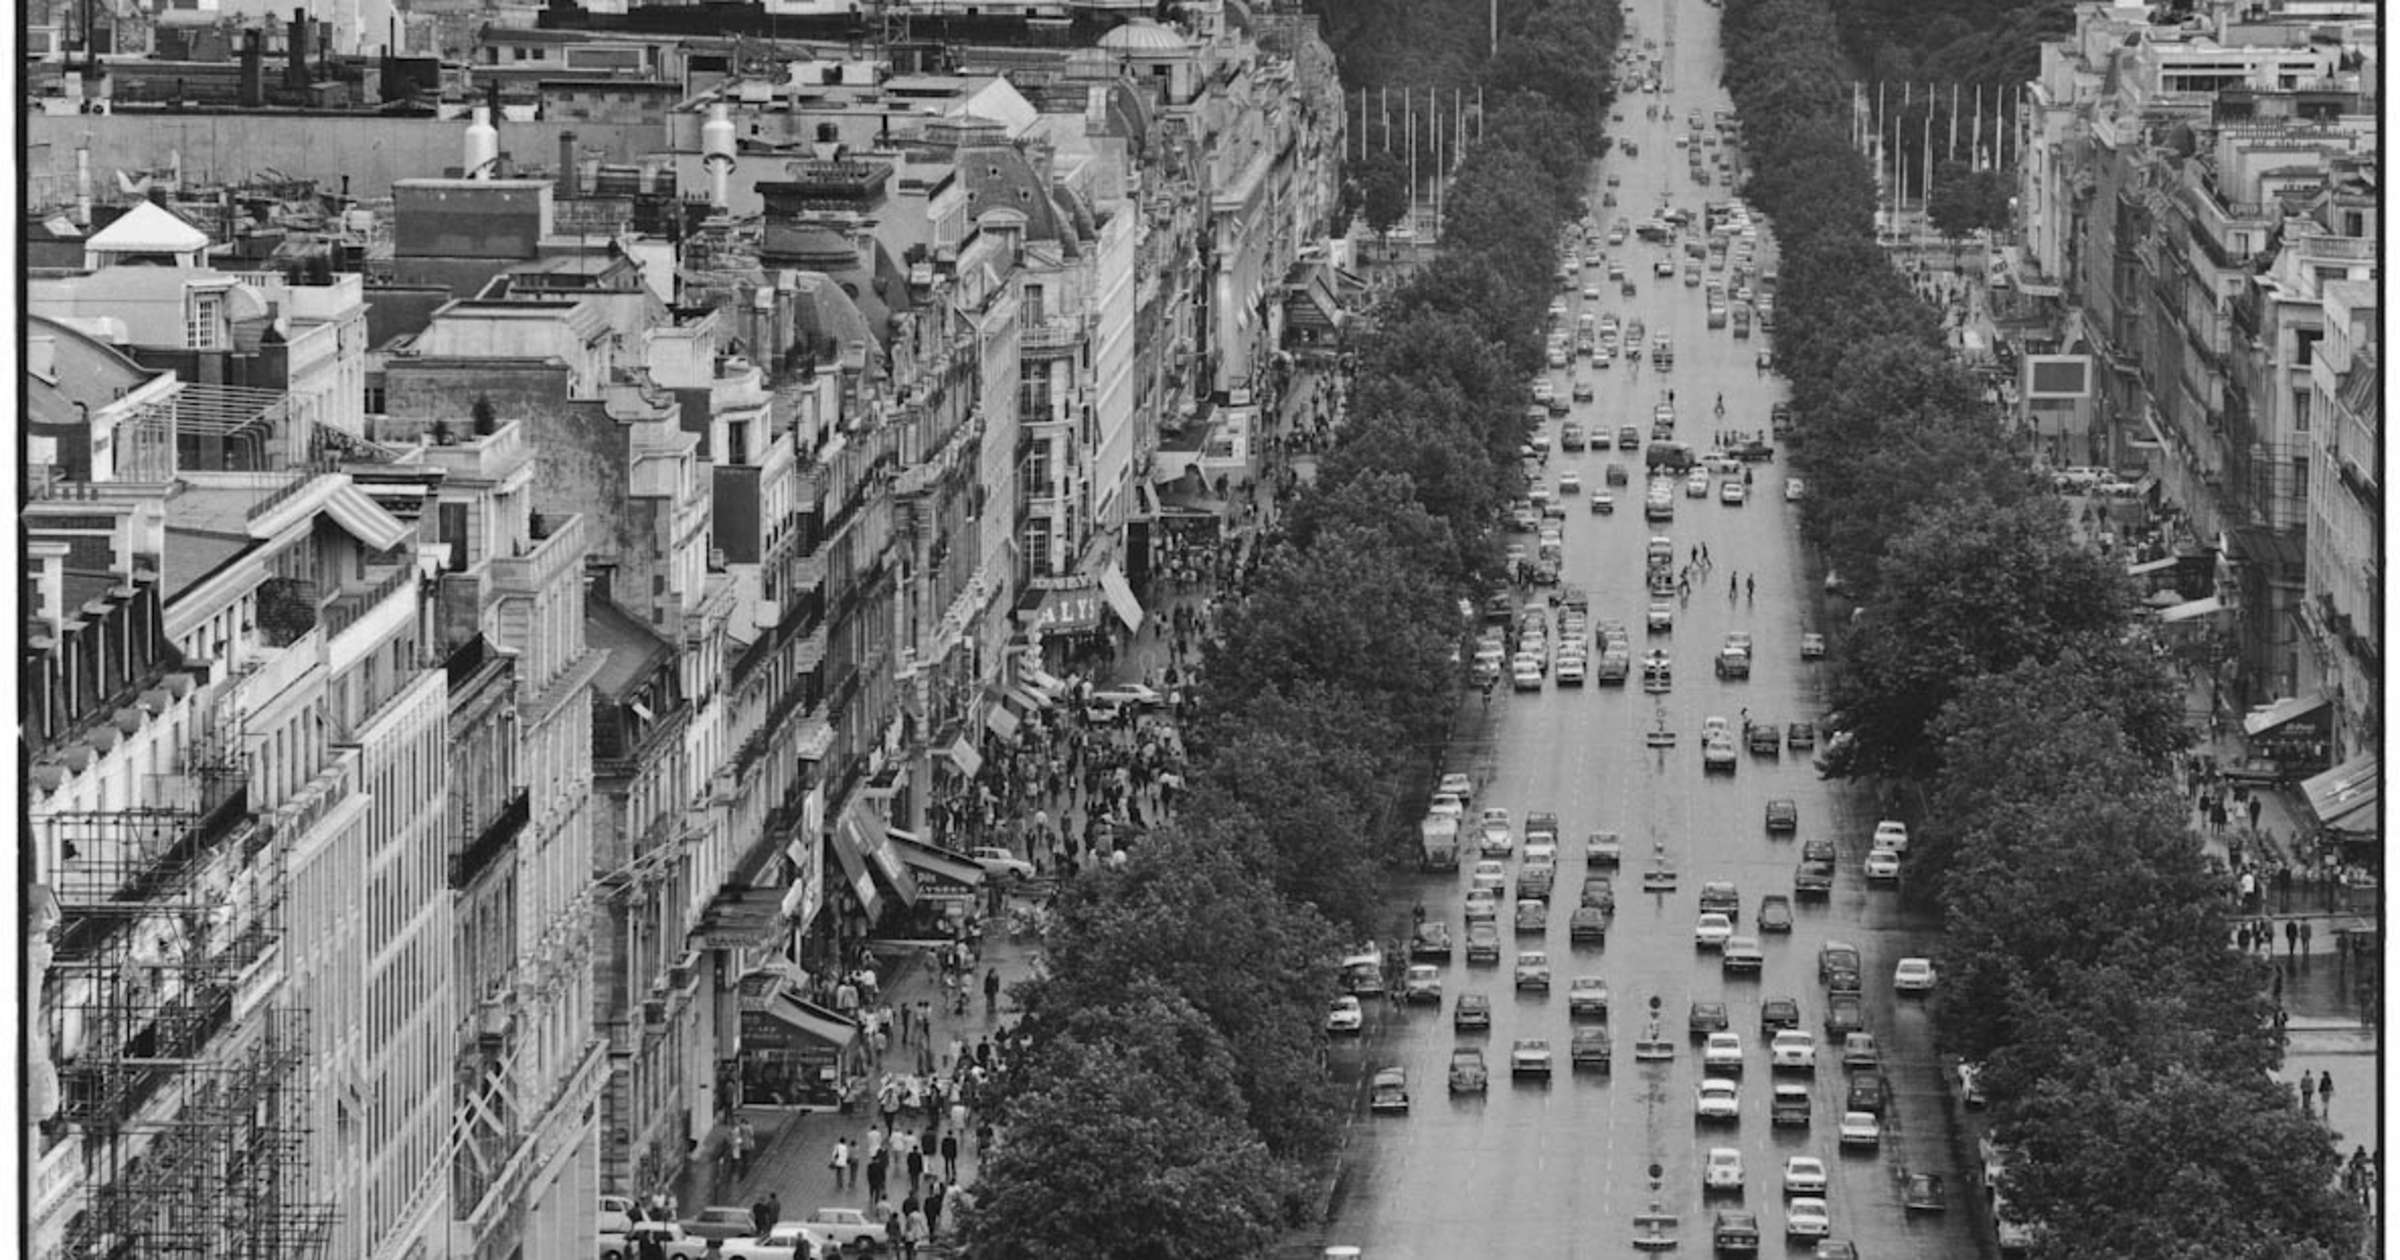 Paris 1970